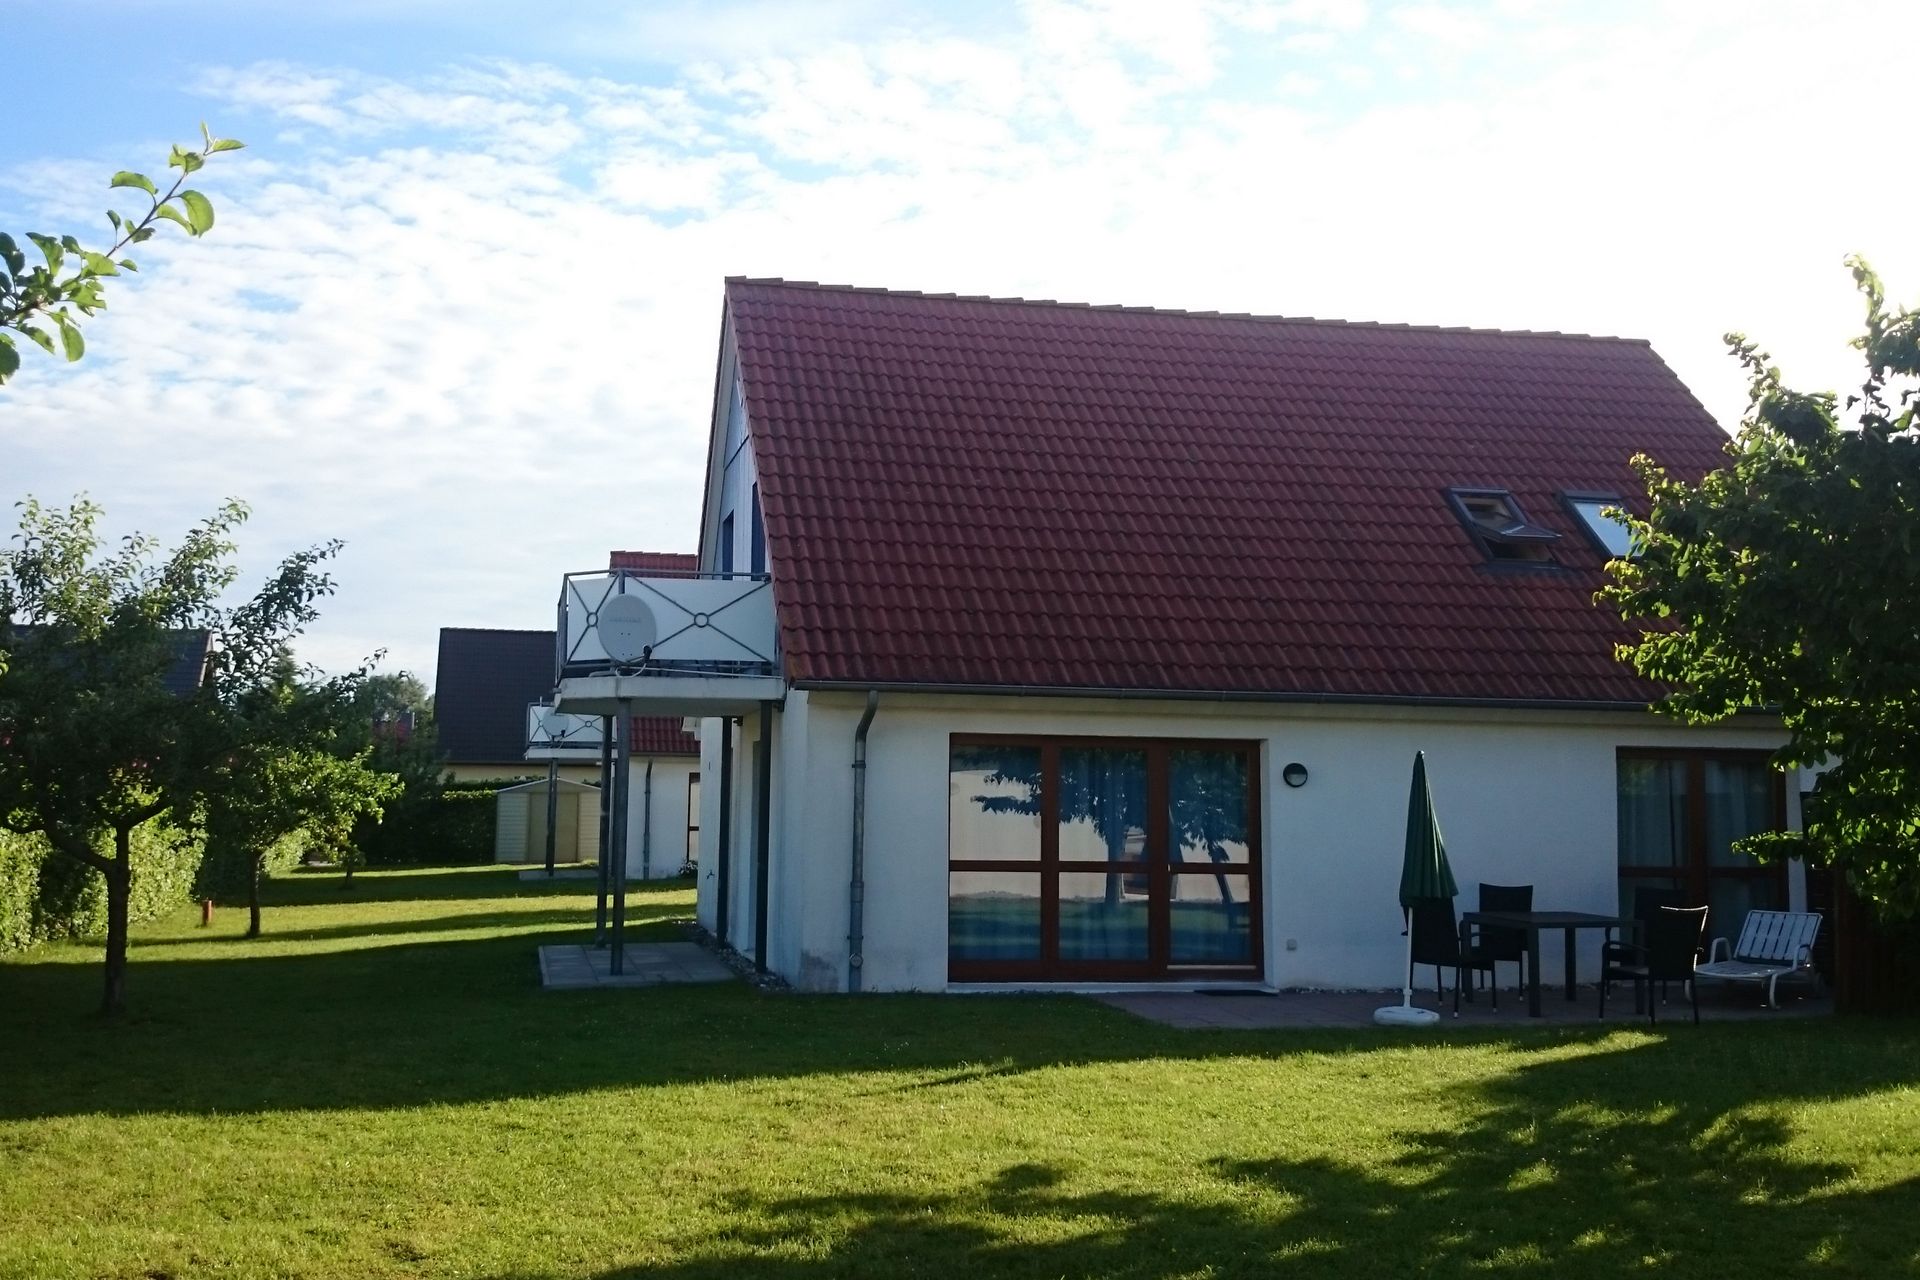 Ferienhäuser Elfriede, Sigrid und Daniela in Heringsdorf auf Usedom an der Ostsee.